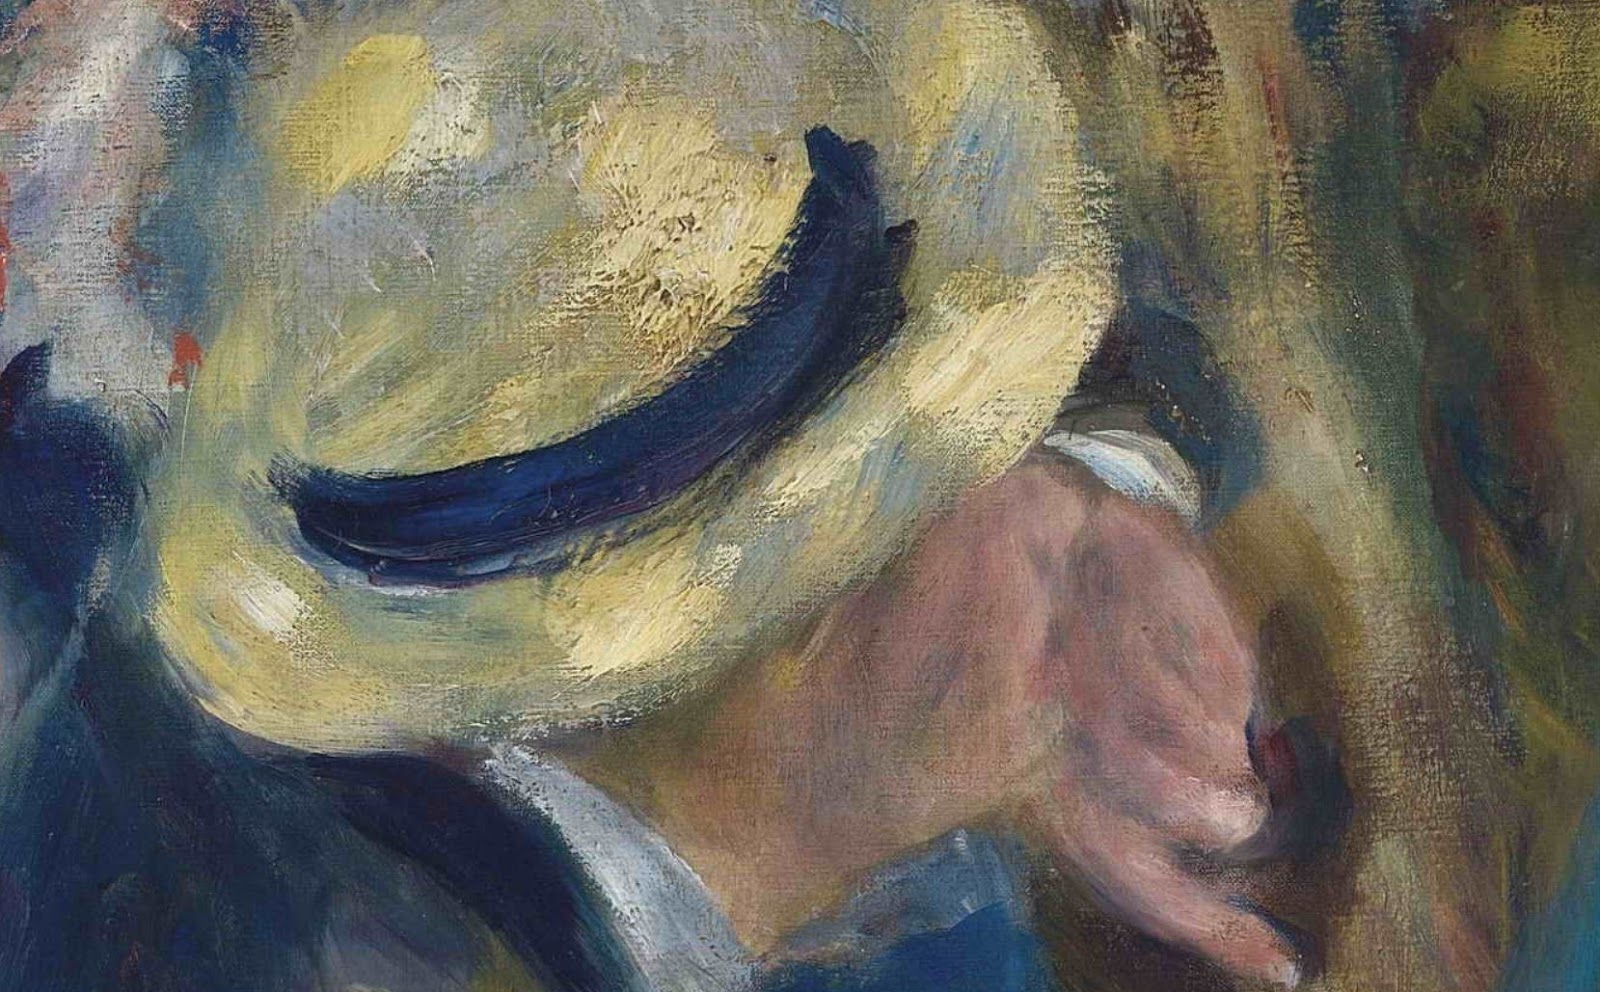 Pierre+Auguste+Renoir-1841-1-19 (447).JPG